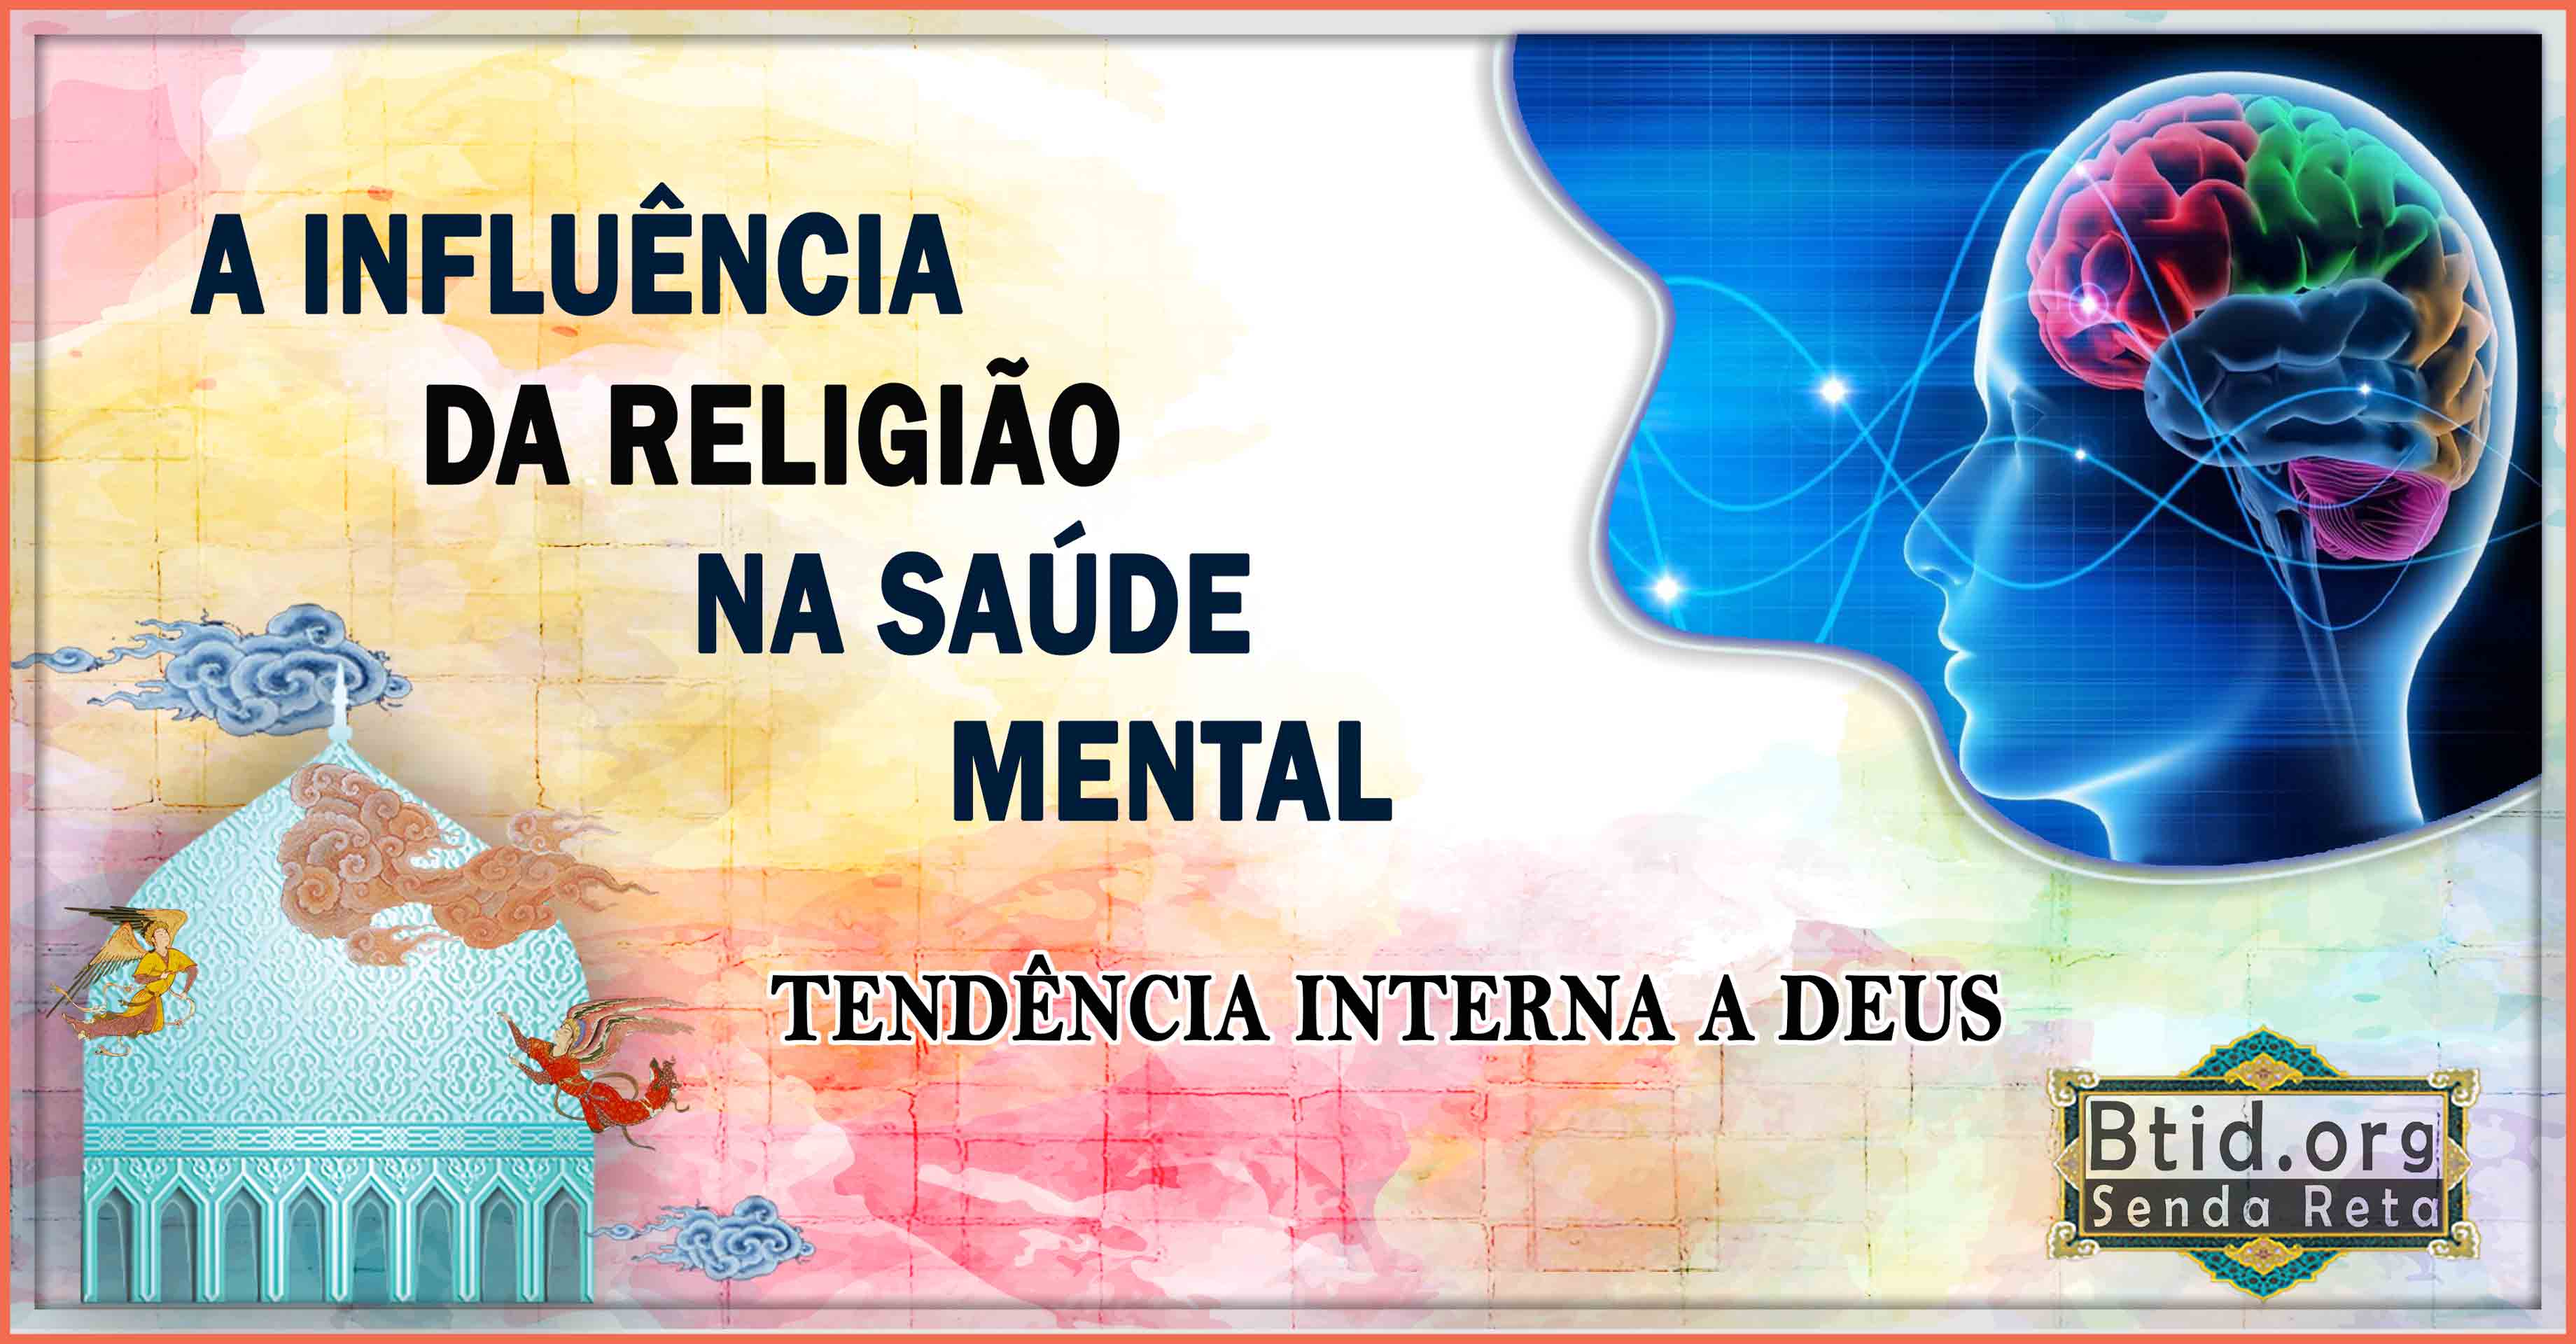  A influência da religião na saúde mental, Tendência interna a Deus